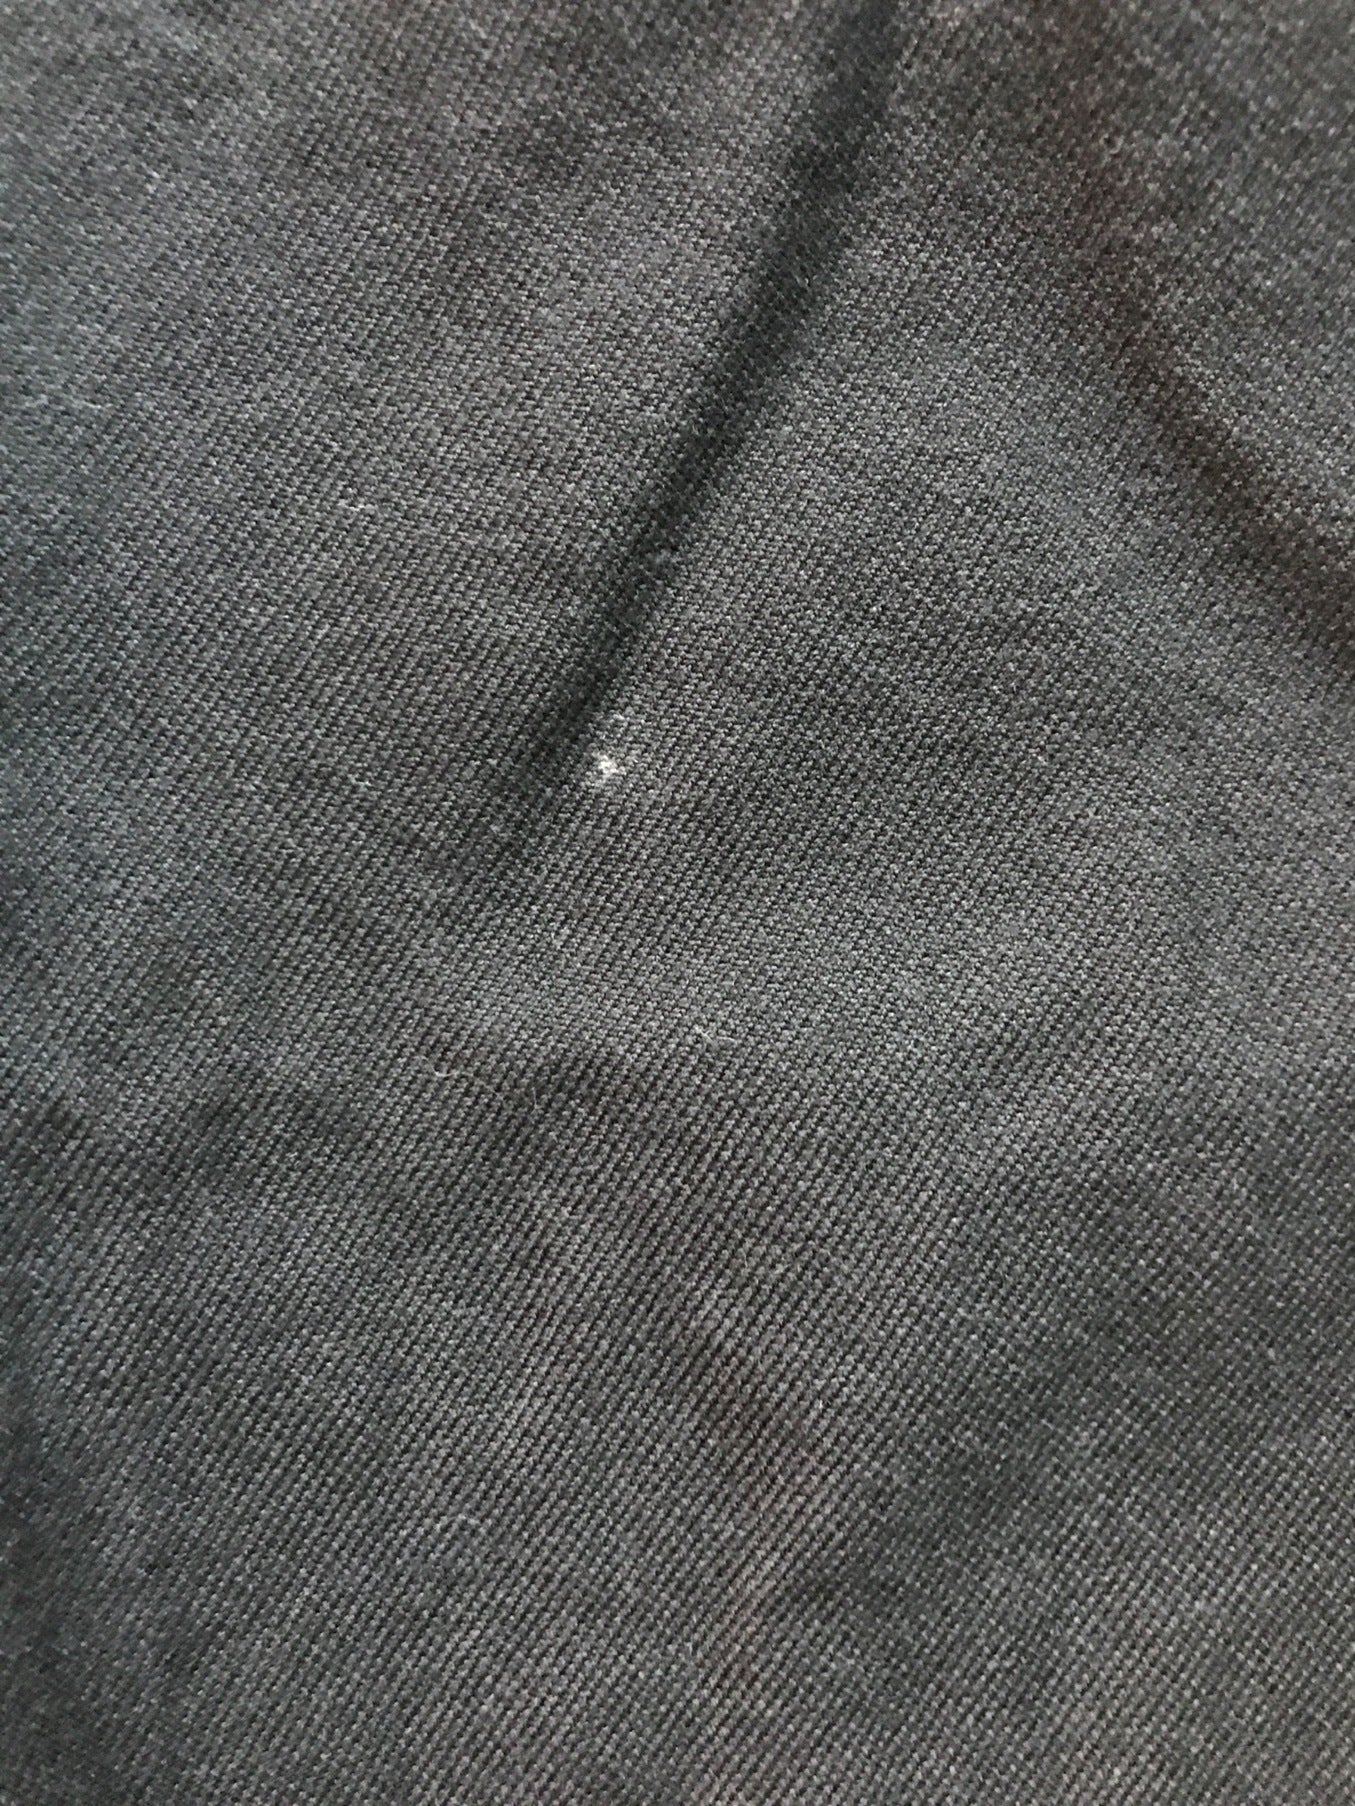 Comme des Garcons Homme Cotton Wool Surge ผลิตภัณฑ์เสร็จสิ้นกางเกง 2-tuck HD-P008